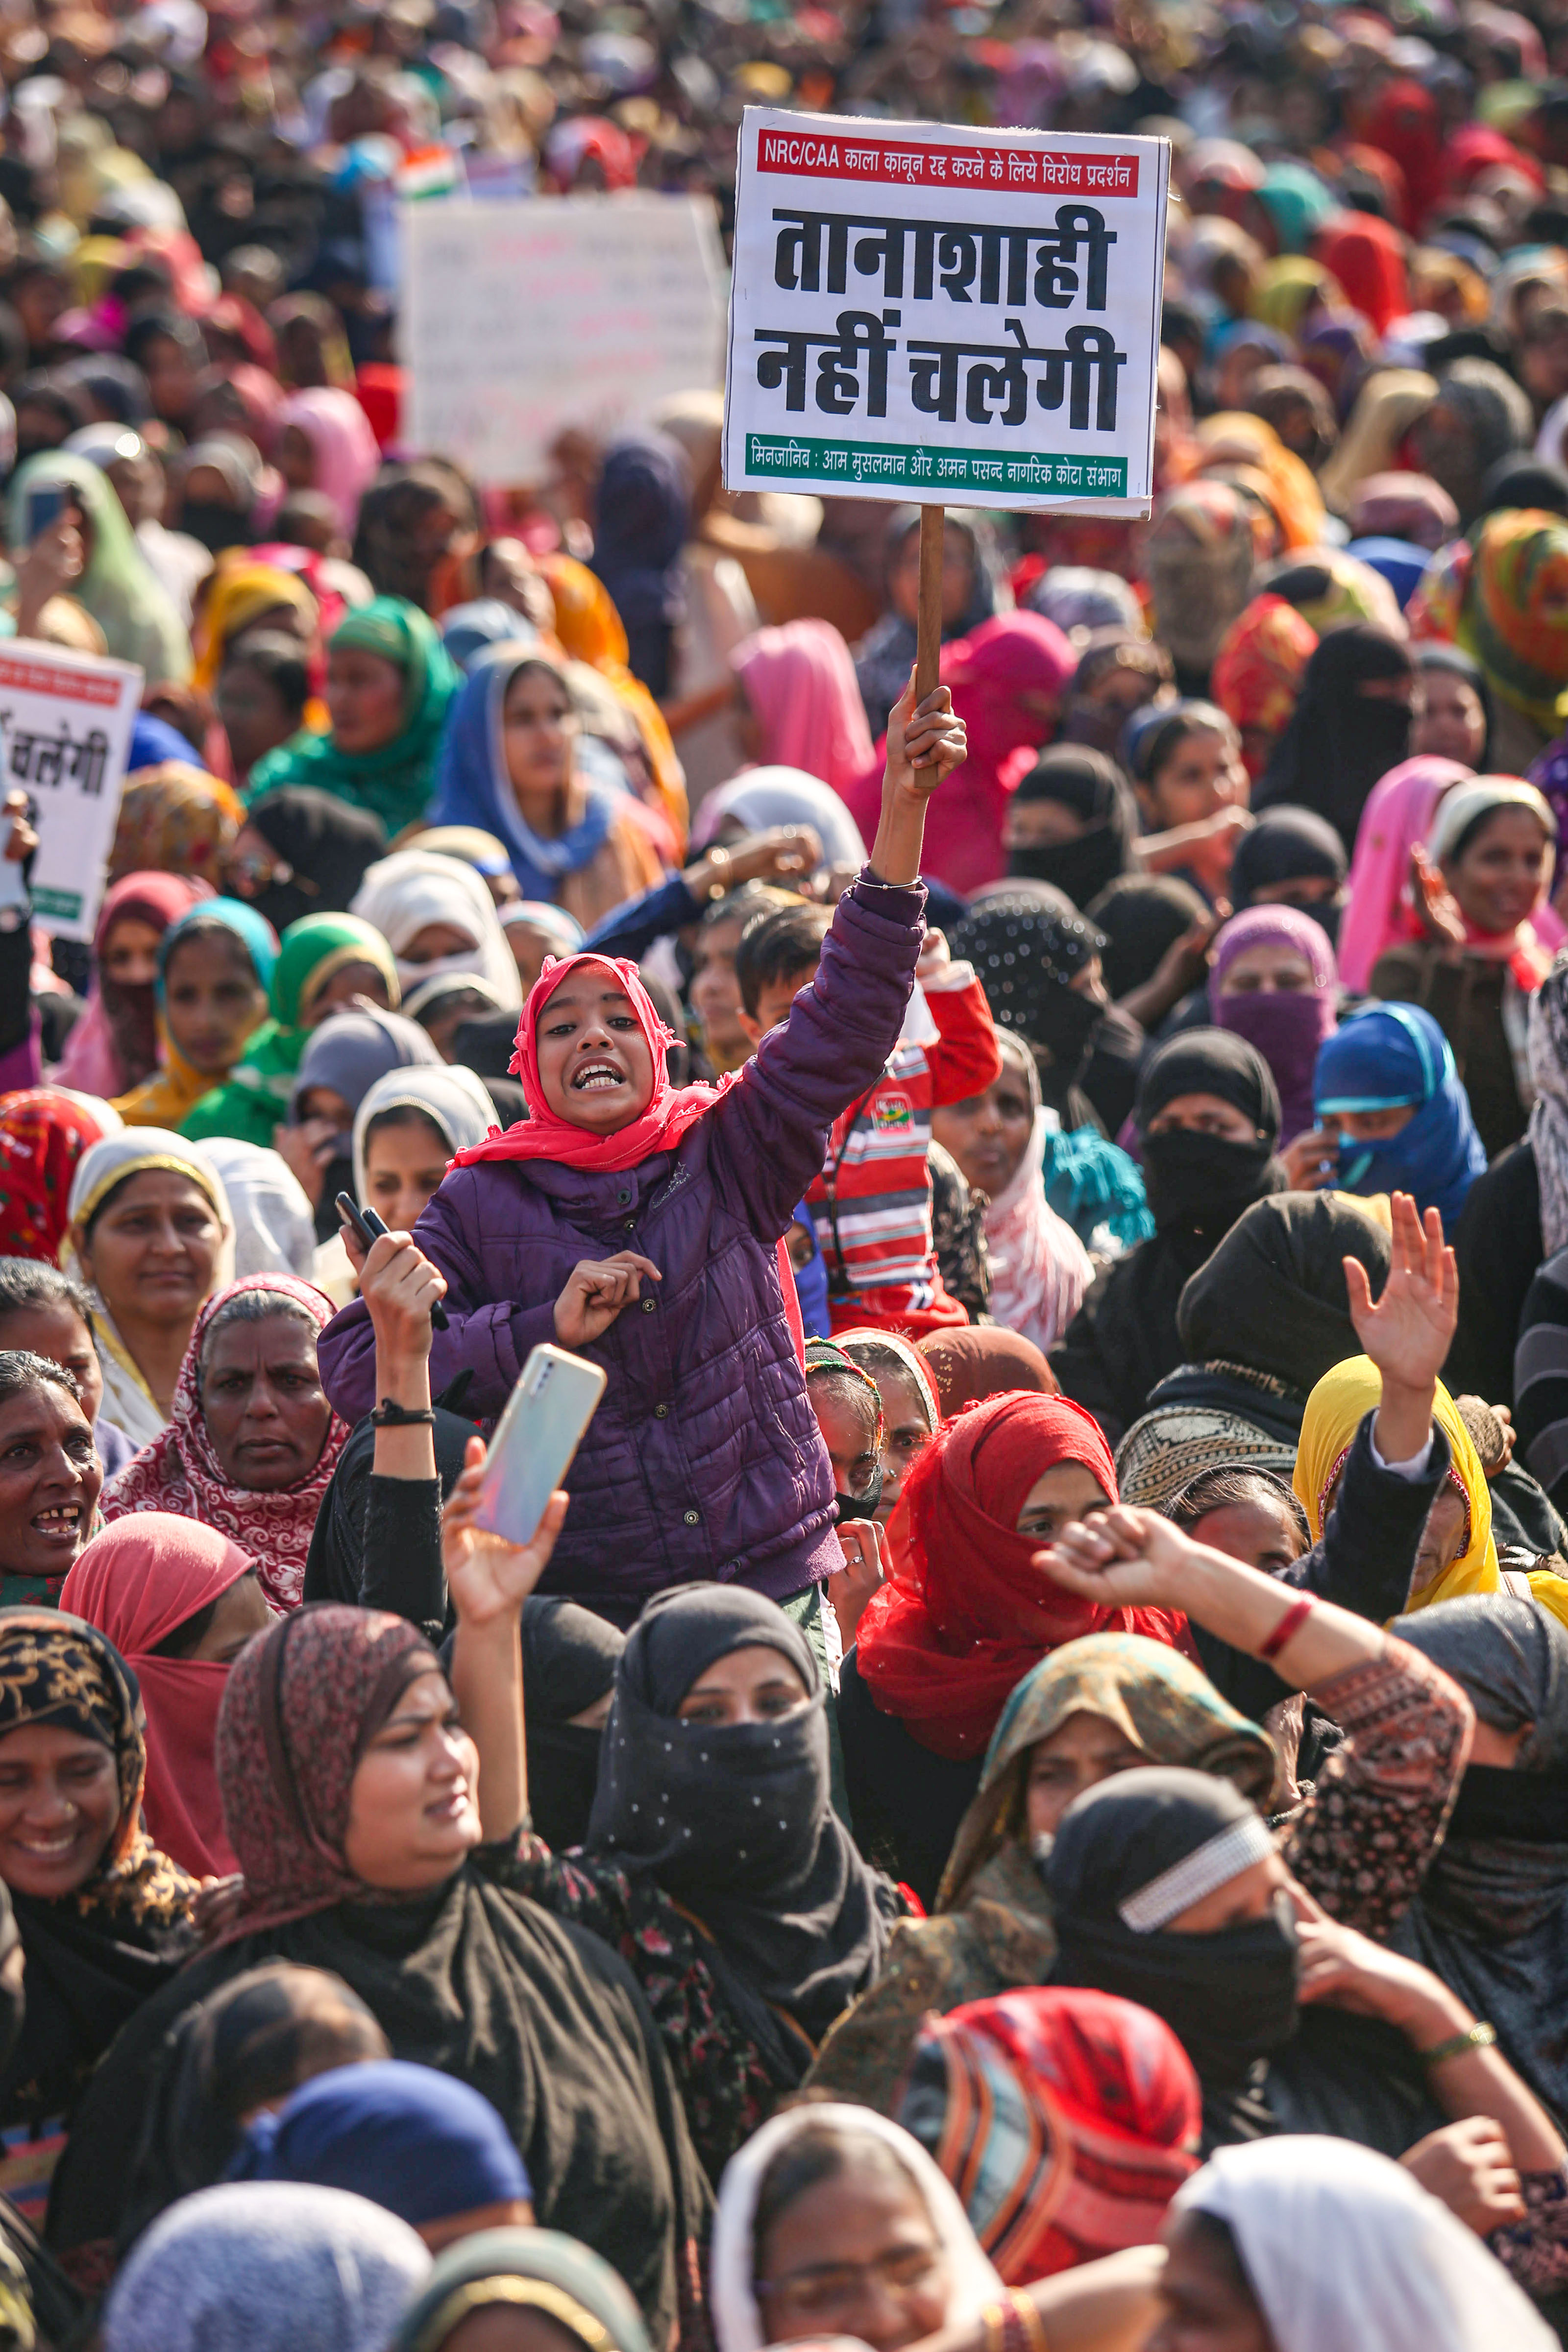 کولکاتہ میں ۱۱ جنوری کو خواتین نے شہریت ترمیمی قانون اور این آر سی کیخلاف احتجاج کیا۔ تصویر : پی ٹی آئی